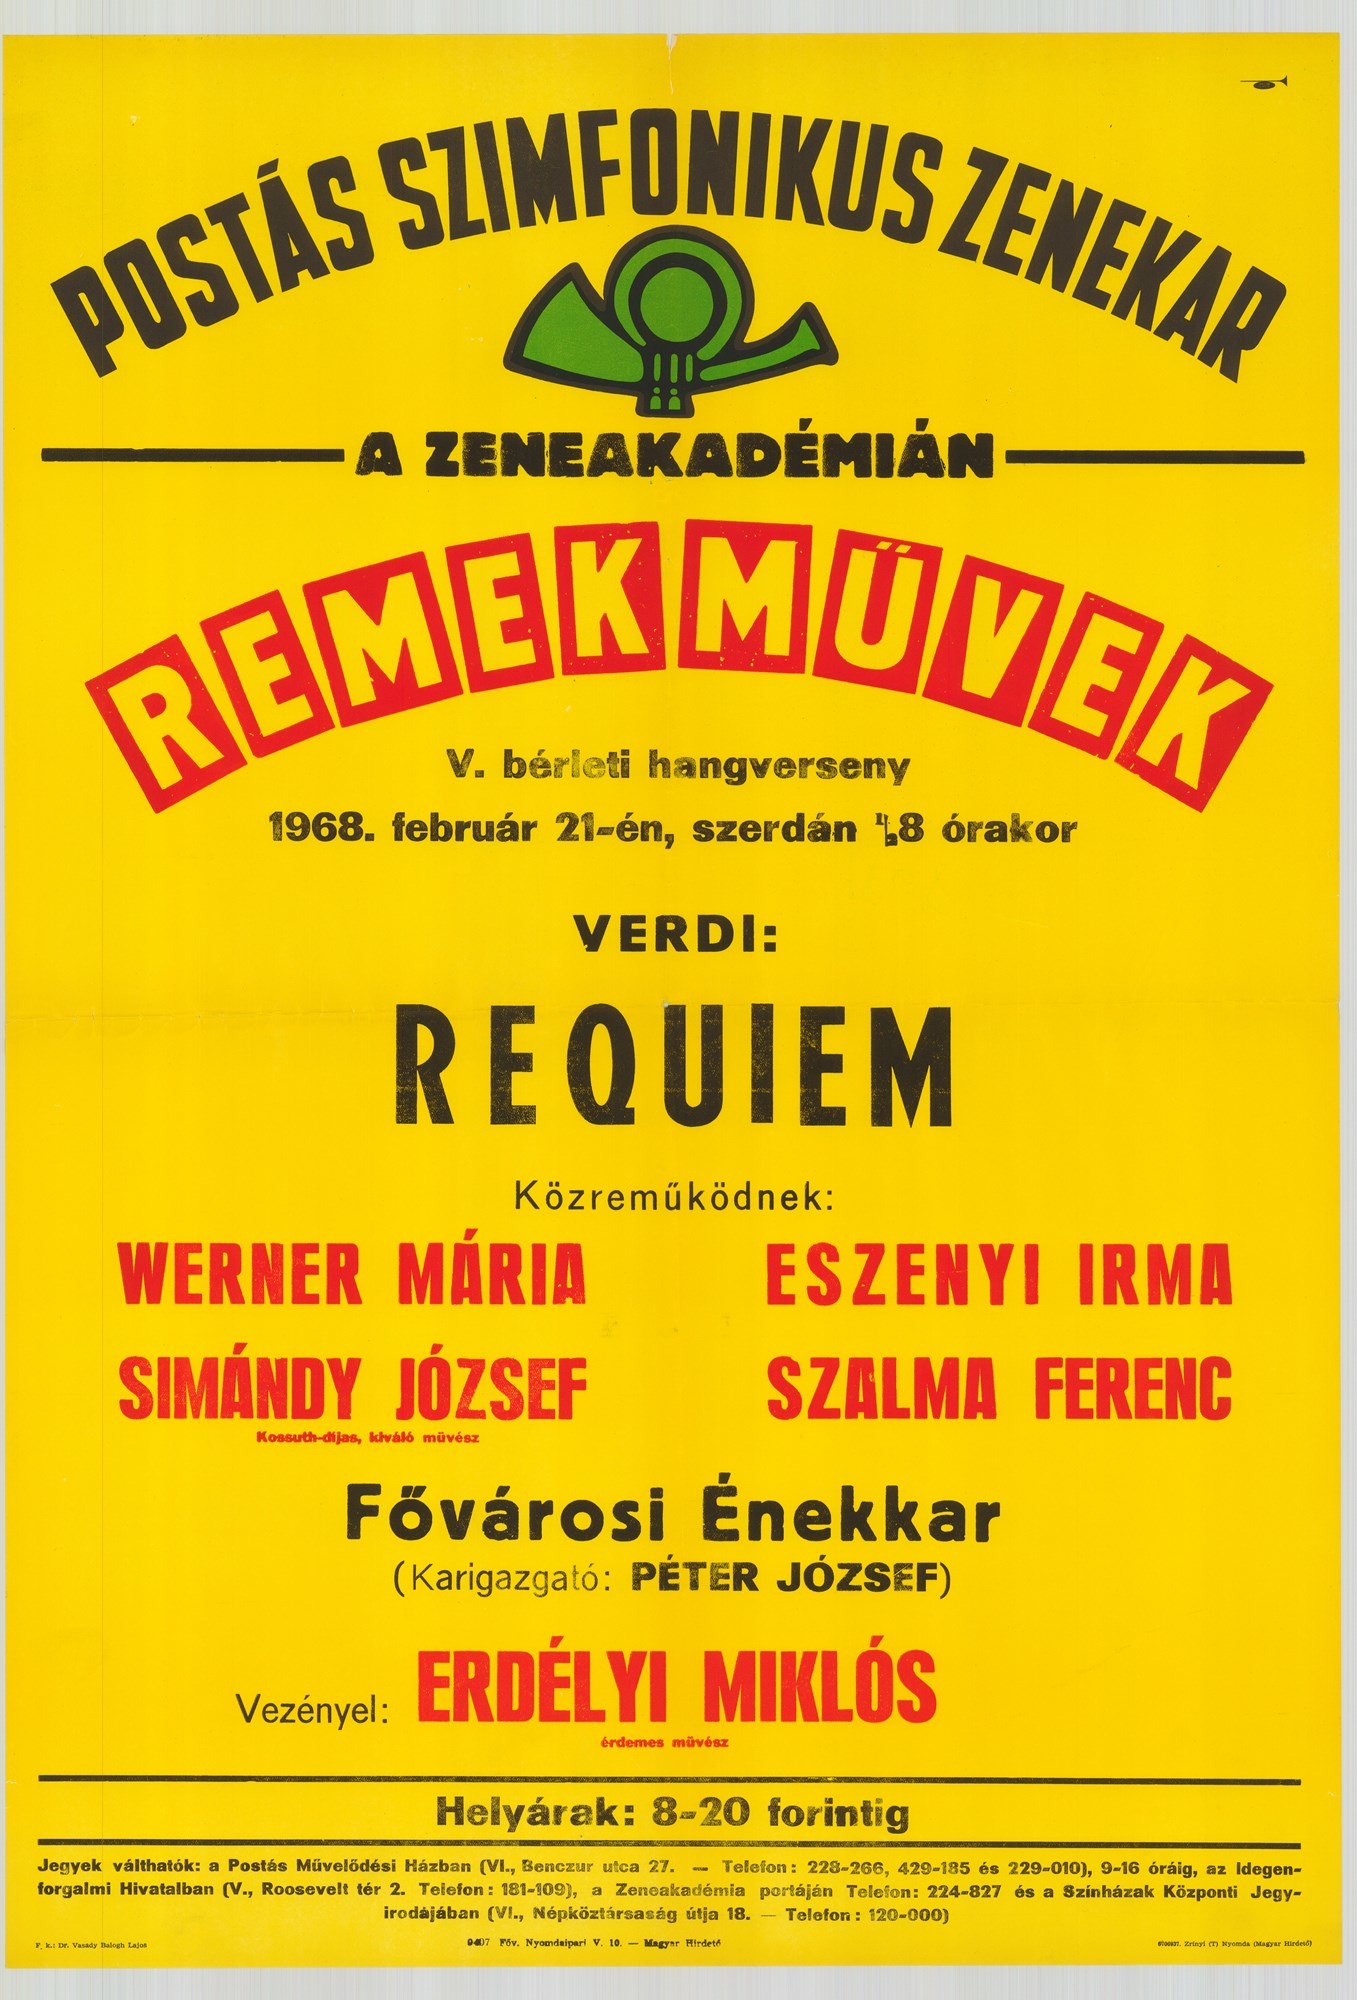 Plakát - Postás Szimfonikus Zenekar a Zeneakadémián, Remekművek, 1968 (Postamúzeum CC BY-NC-SA)